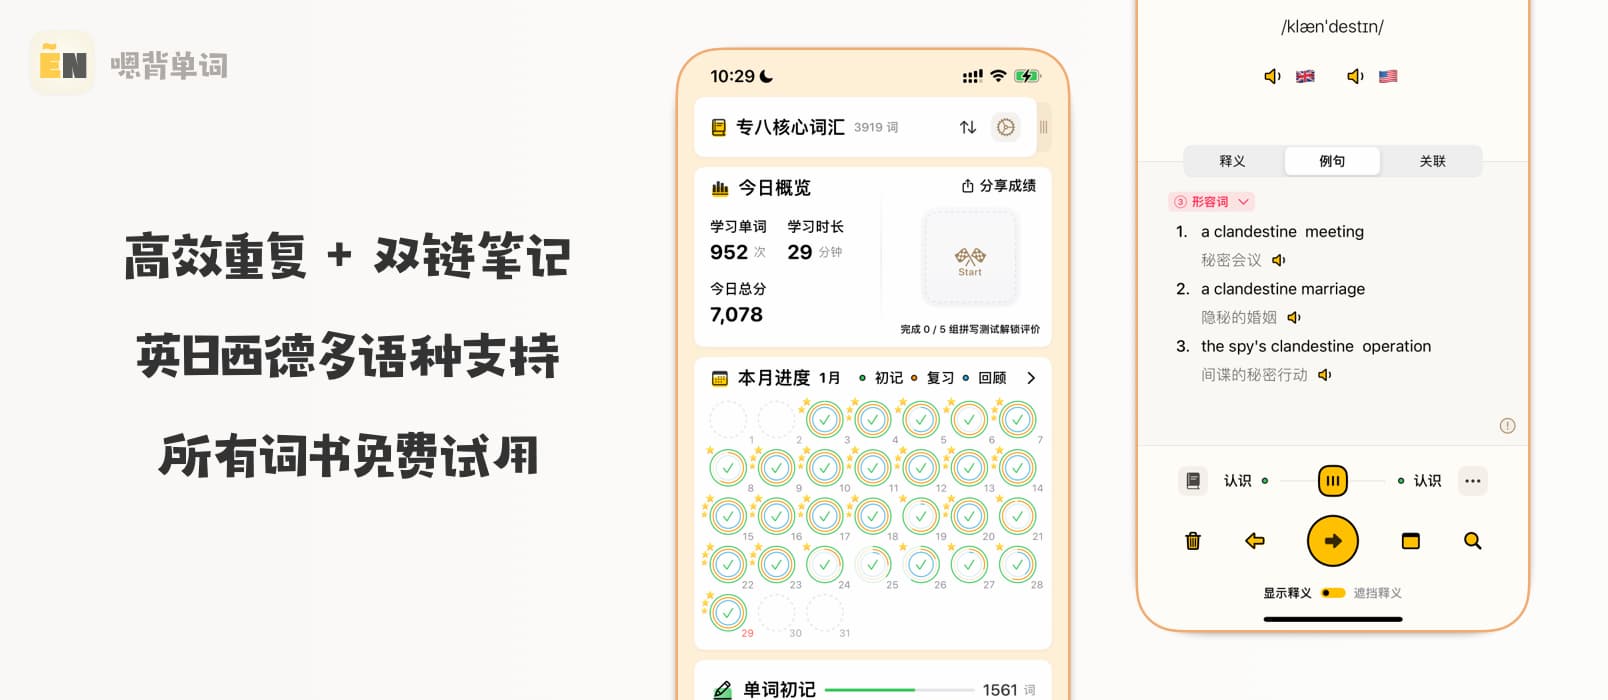 【iOS】高效重复 + 双链笔记，用这个 APP 30天搞定英语，日语单词!